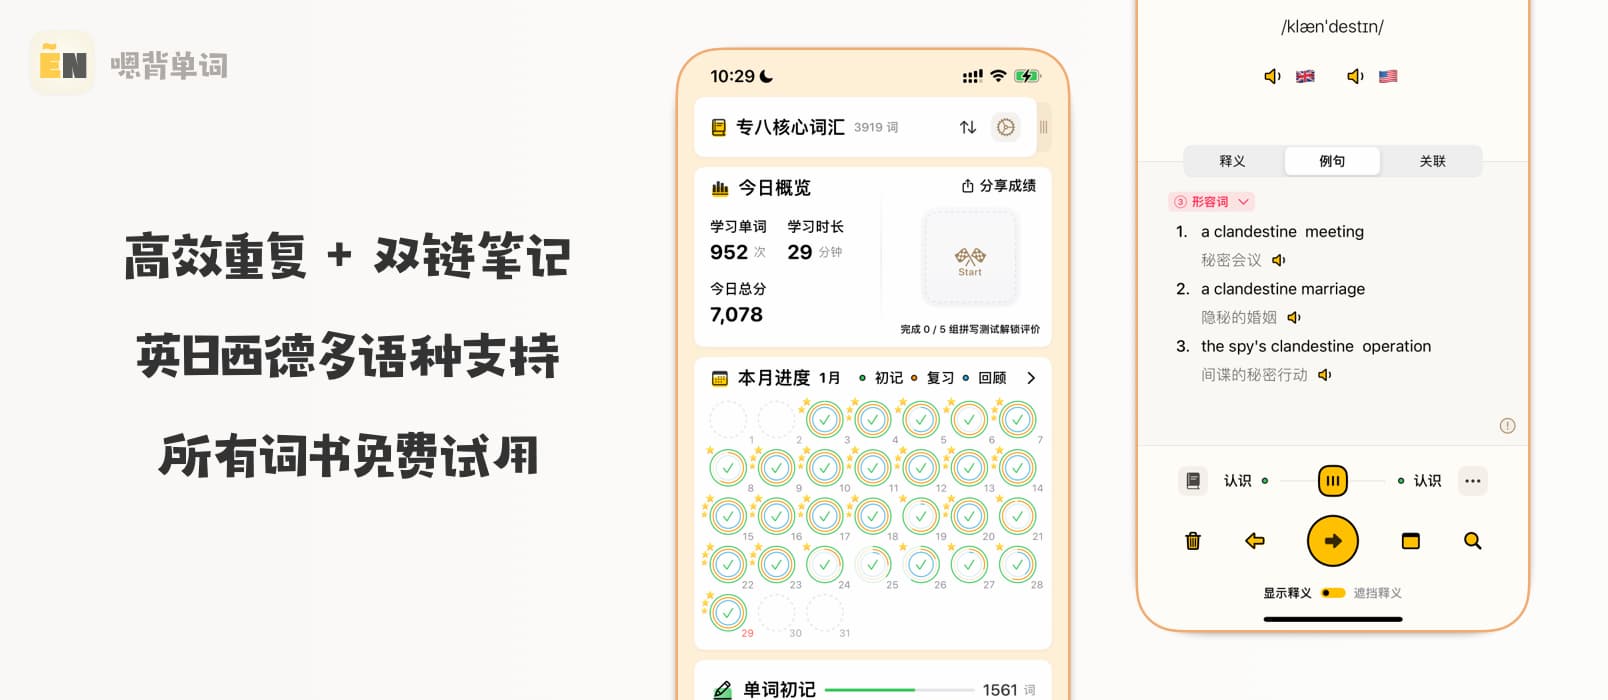 【iOS】高效重复 + 双链笔记，用这个 APP 30天搞定英语，日语单词!